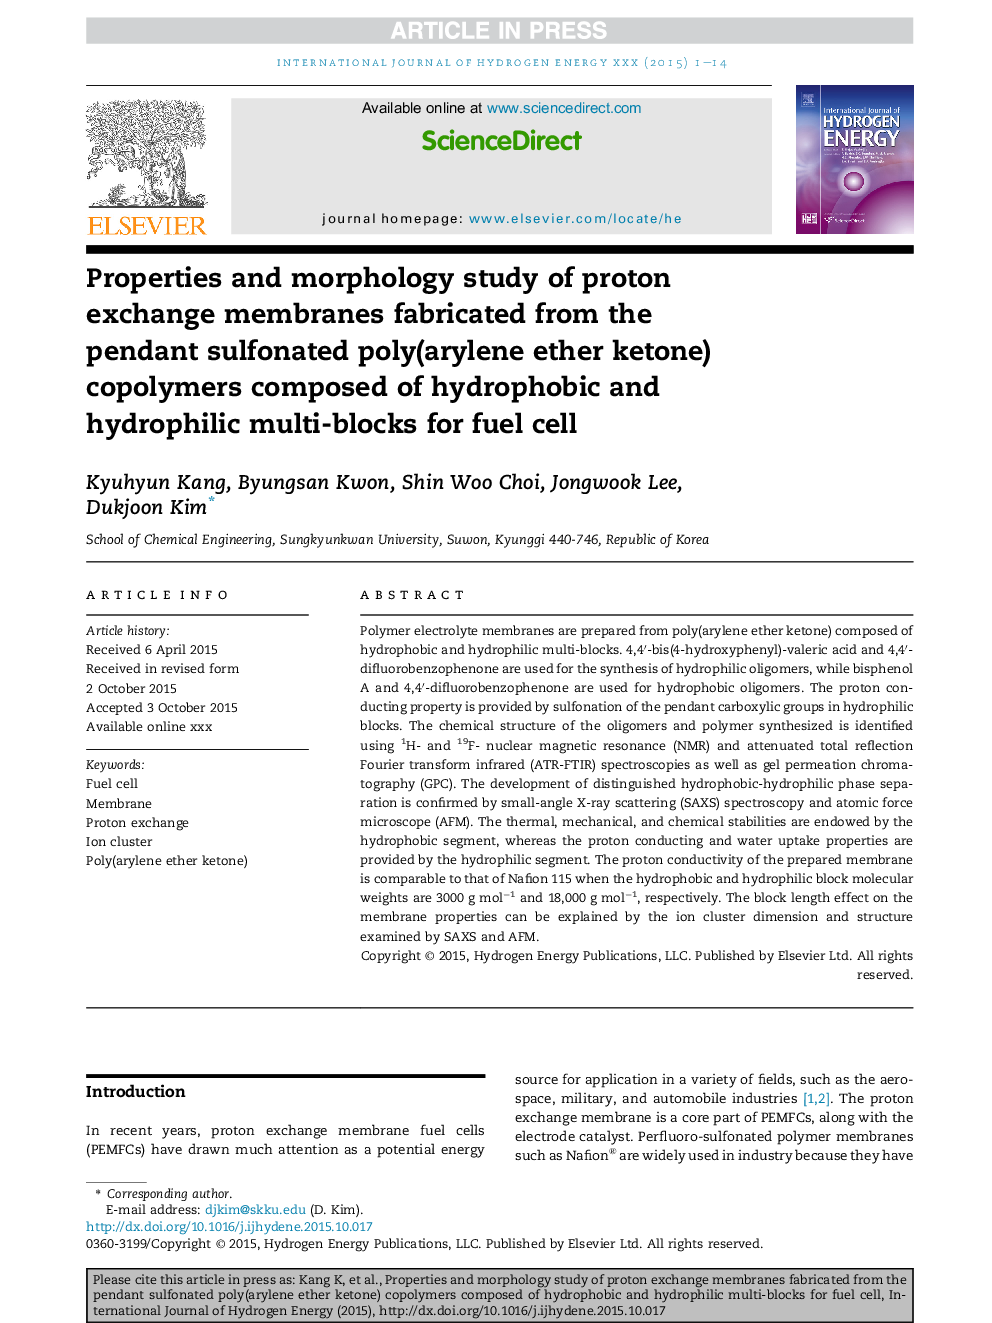 خواص و بررسی مورفولوژی غشاهای تبادل پروتون ساخته شده از کوپلیمرهای سولفونیک پلی کریستین (آرویلن اتر کتون) آویز ساخته شده از چند بلوک هیدروفوب و هیدروفیلی برای سلول سوختی 